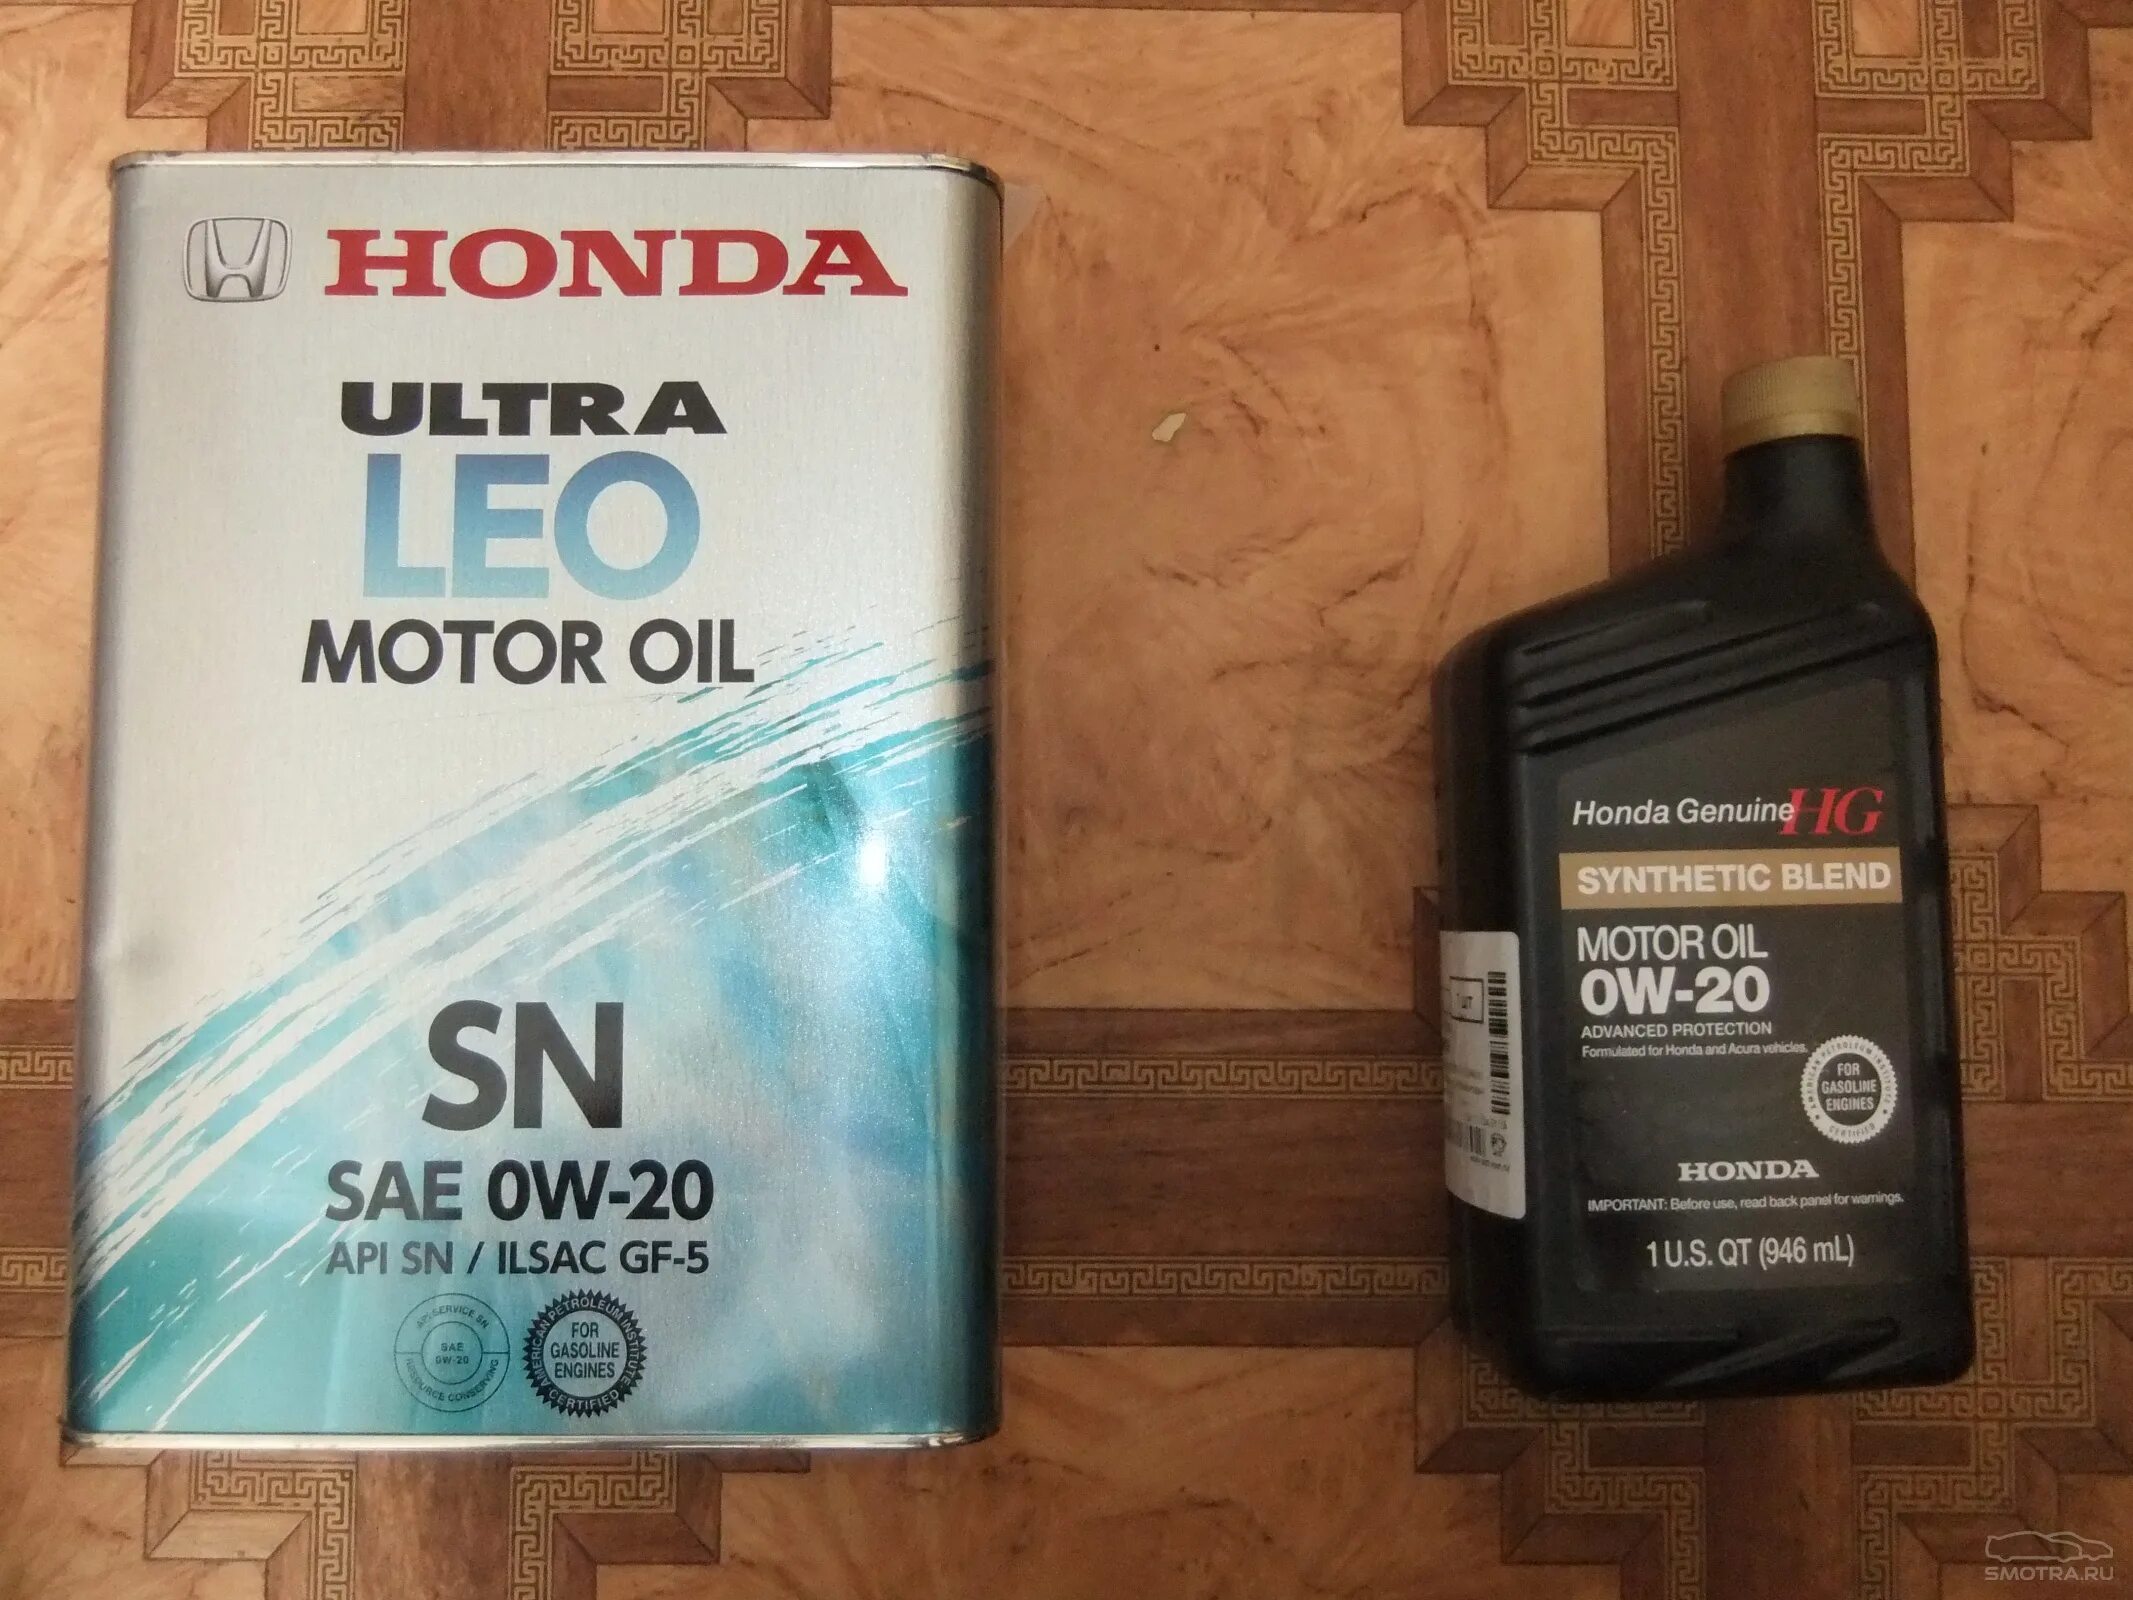 Оригинальное масло Хонда 0w20. Моторное масло Honda CR-V 2013. Honda CR-V 2.0 мотор масла. Honda Synthetic Blend 5w30.